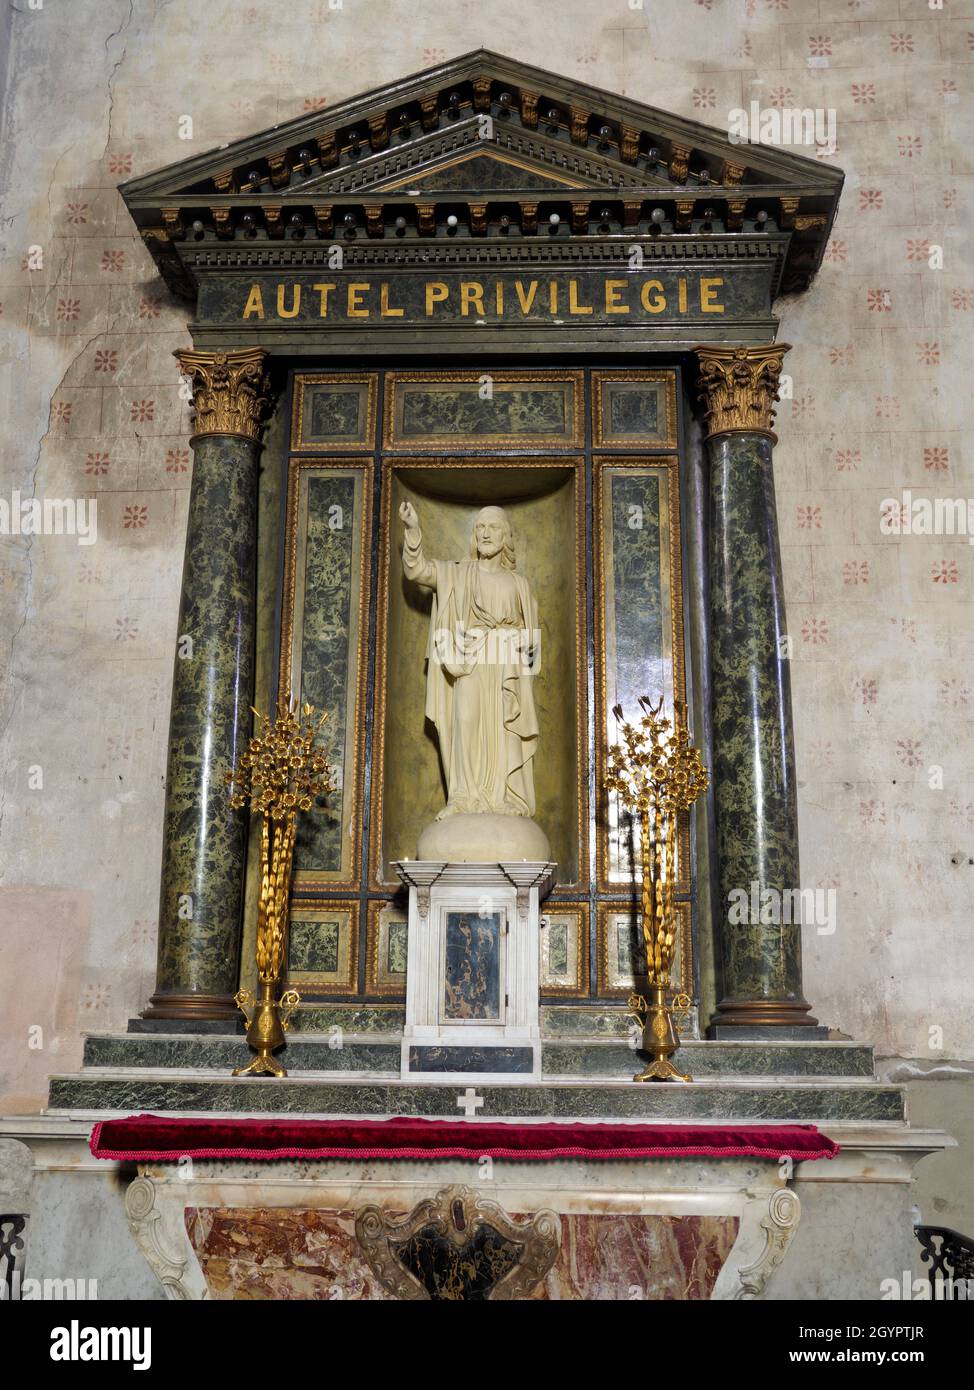 Privileged altar, Church of Saint-Étienne de Maringues, Maringues, Auvergne, France. Stock Photo